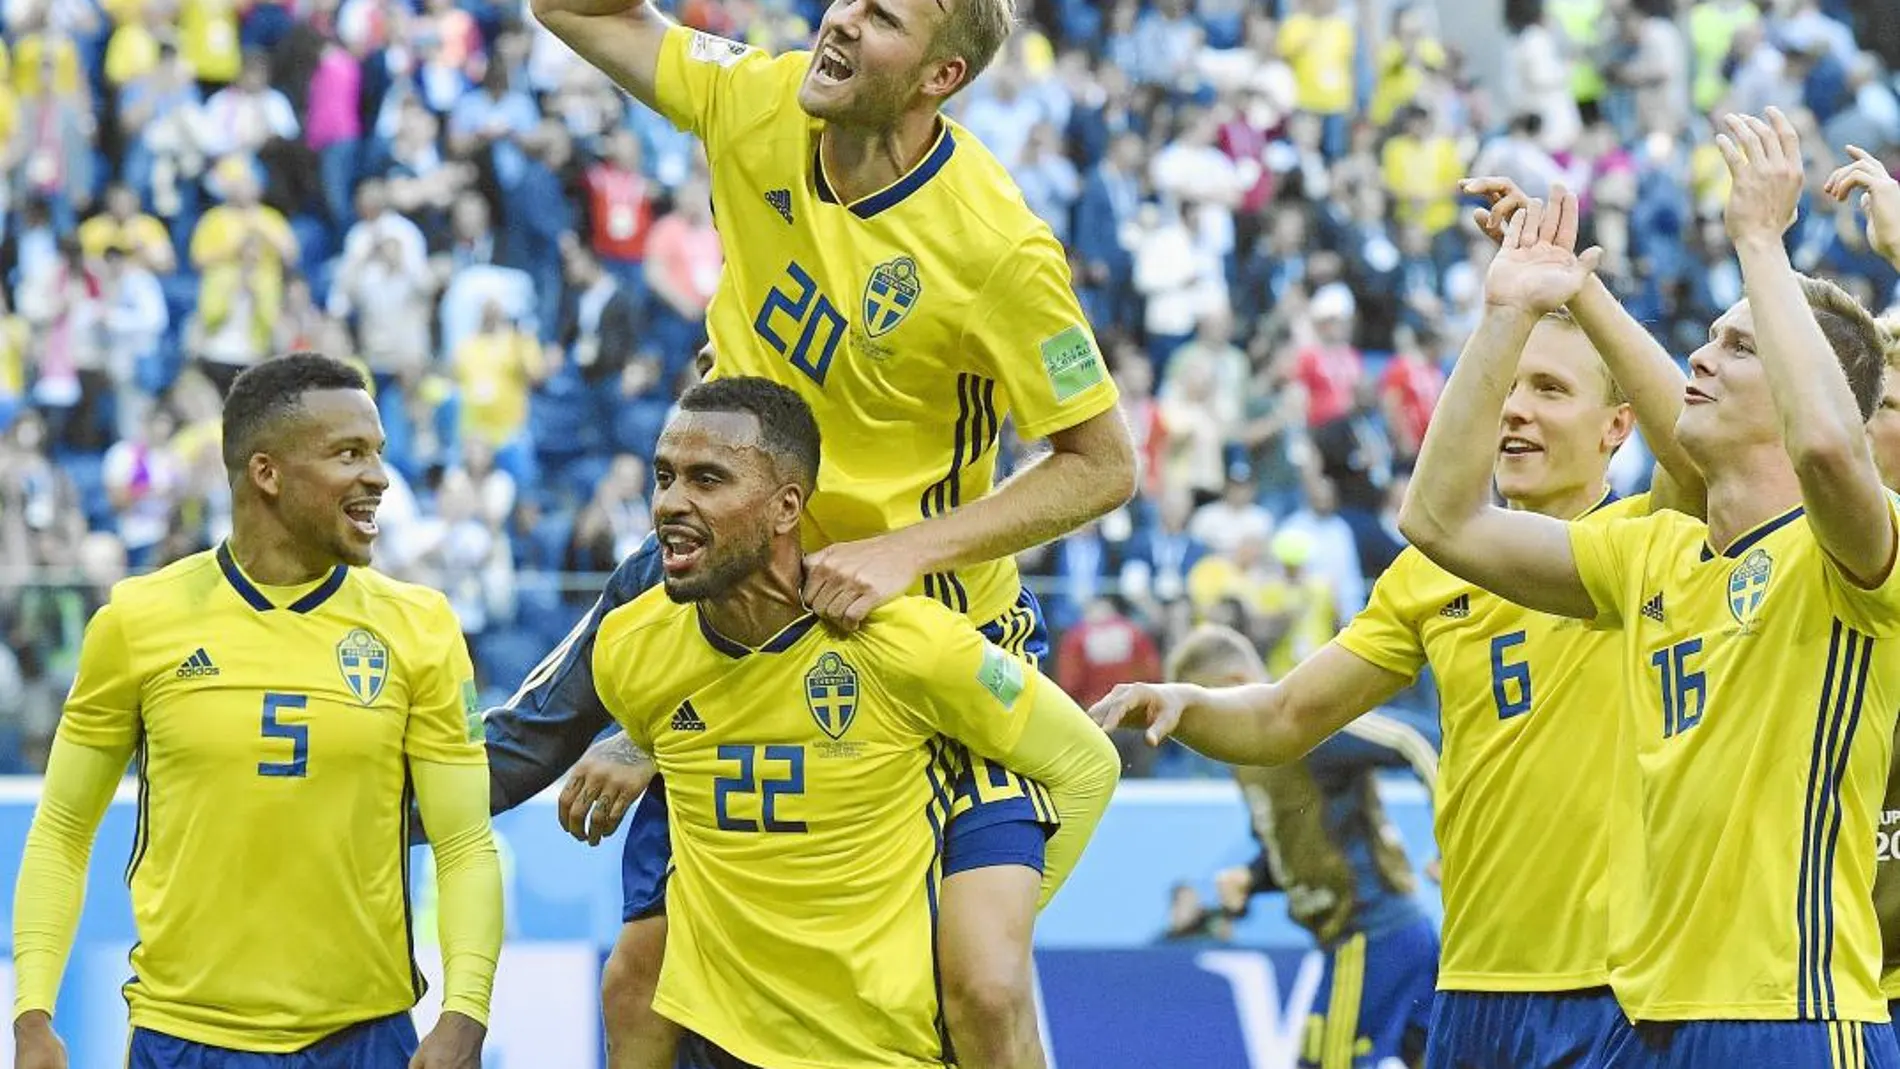 Suecia es una de las sorpresas del campeonato. Después de 24 años han vuelto a los cuartos de final al imponerse a Suiza